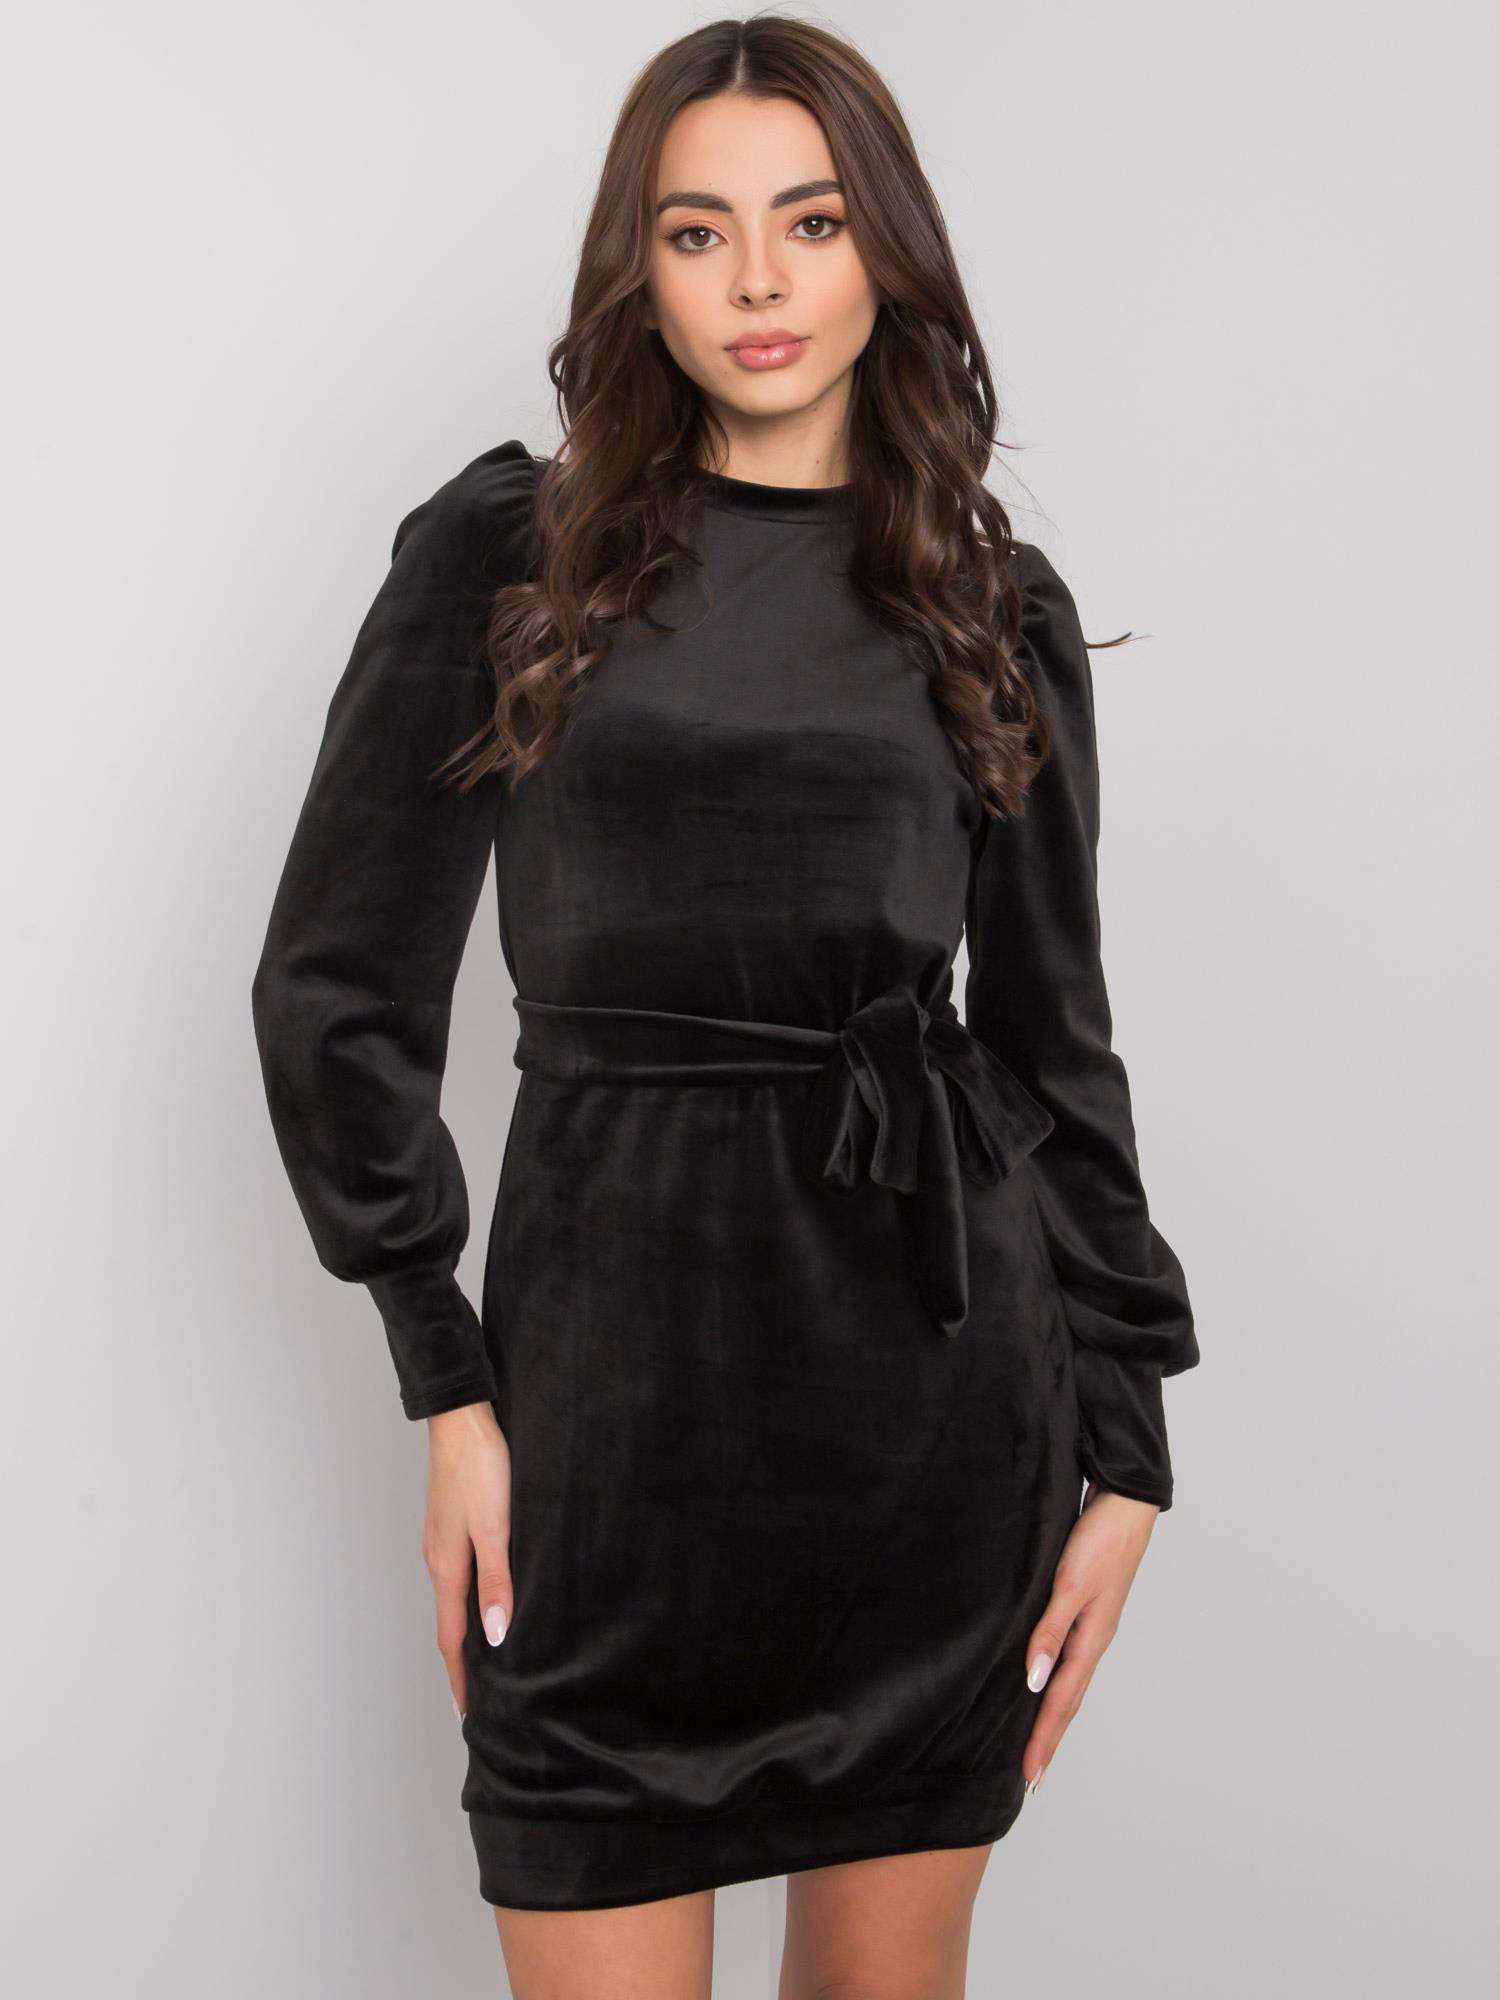 Černé sametové mini šaty s páskem WN-SK-873.24X-black Velikost: L